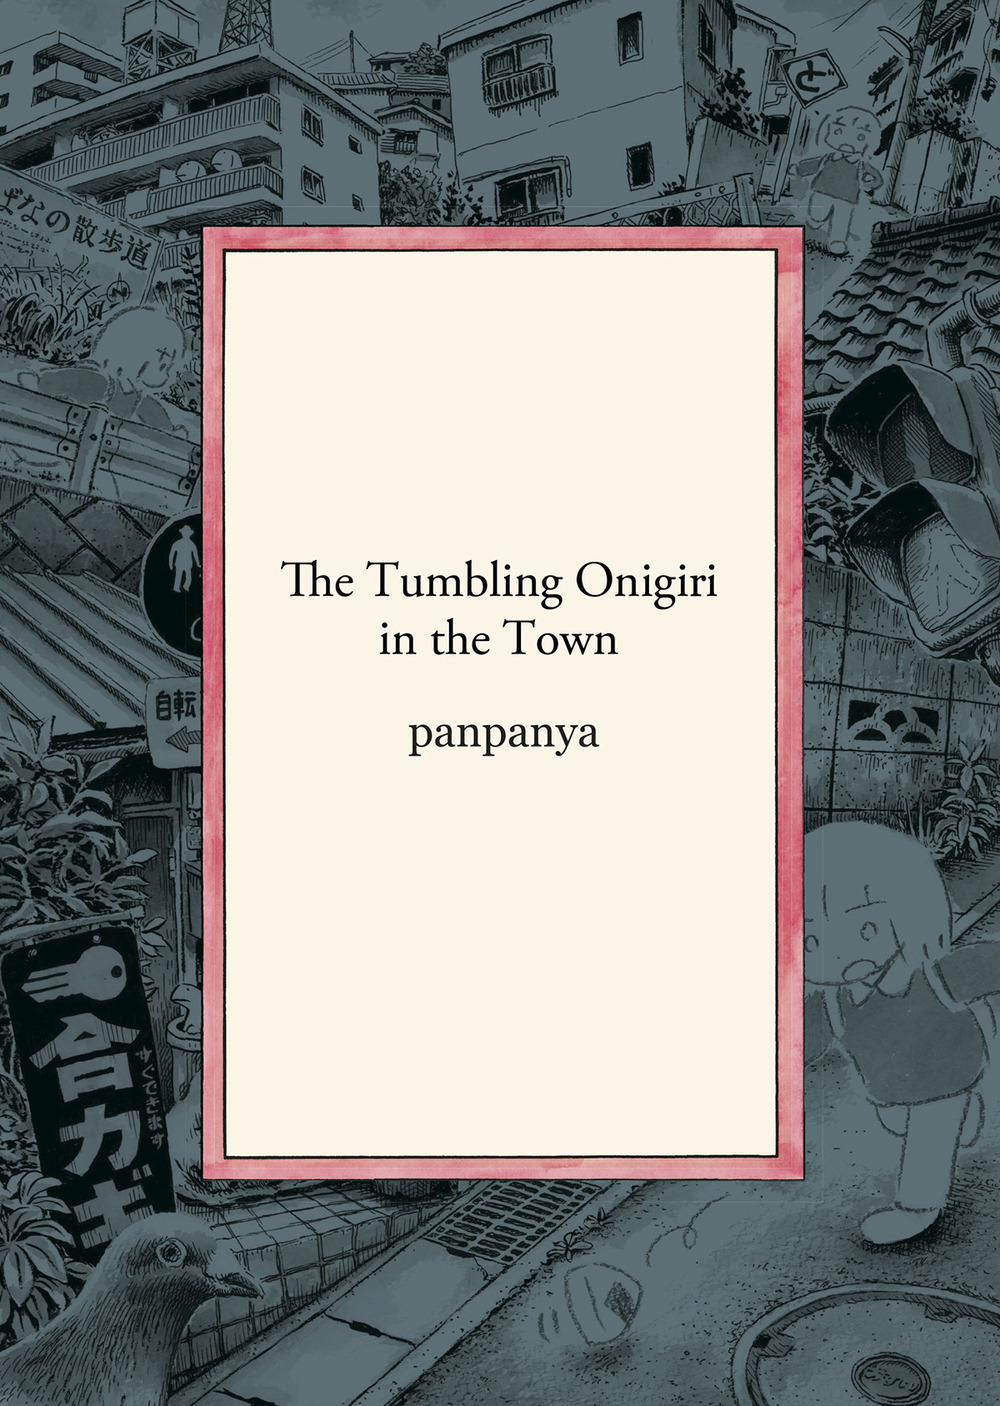 The tumbling onigiri in the town (Italiano language, Star Comics)